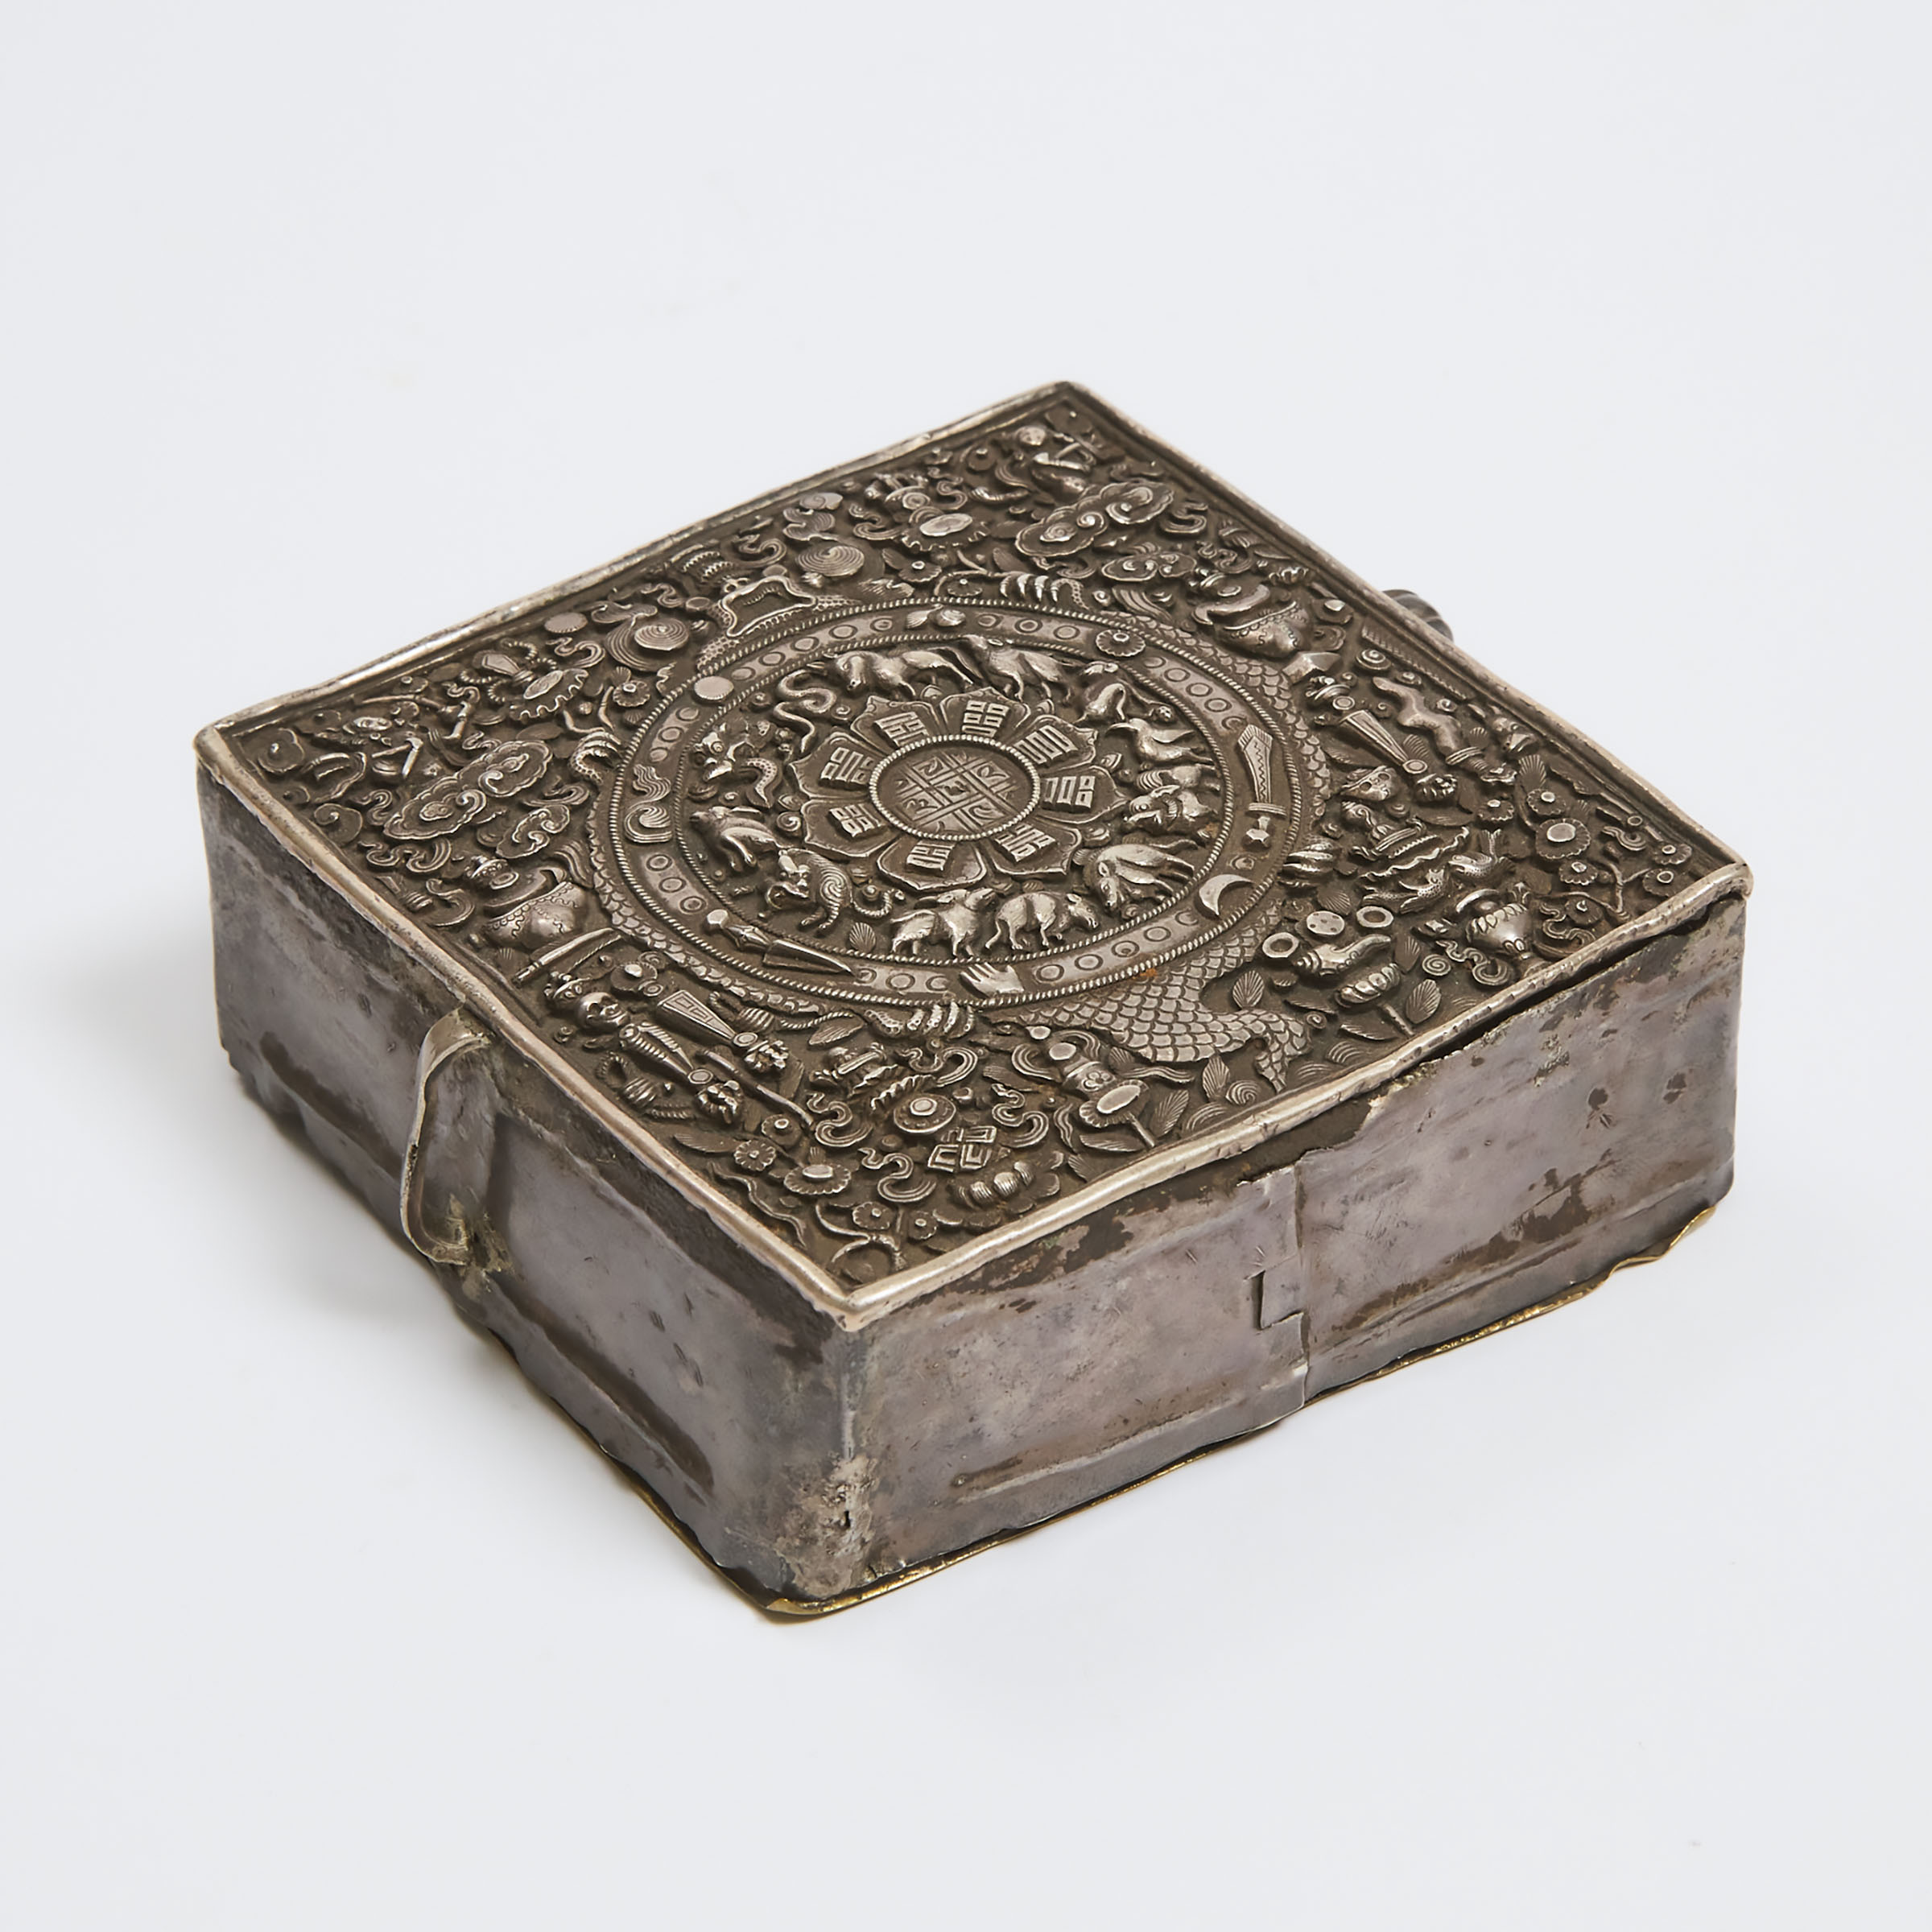 A Tibetan Silver Portable Amulet 3abbe1